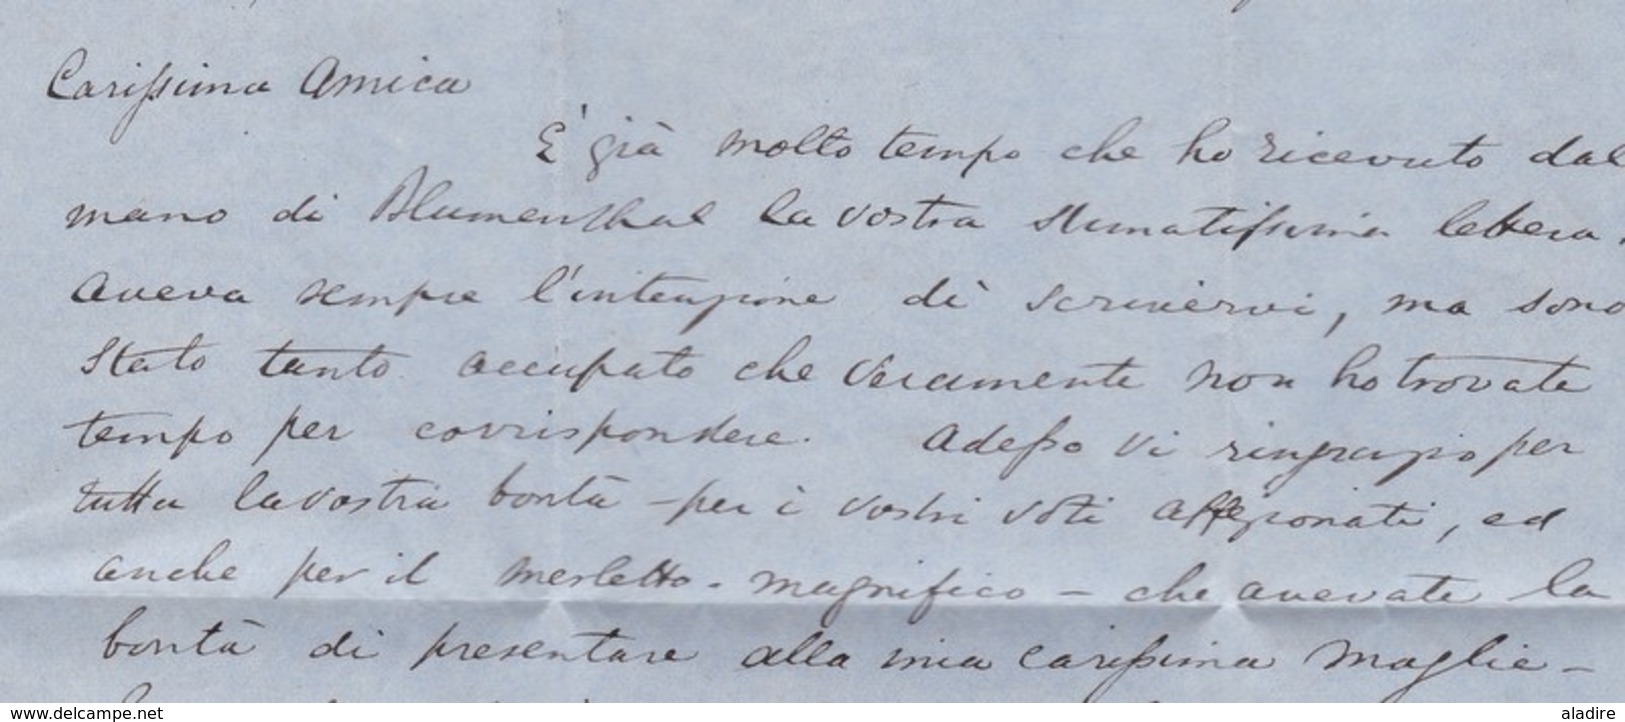 1853 - QV - lettre pliée avec corresp amicale de 3 pages en italien de Londres vers Rome, Italie - via Calais,  France